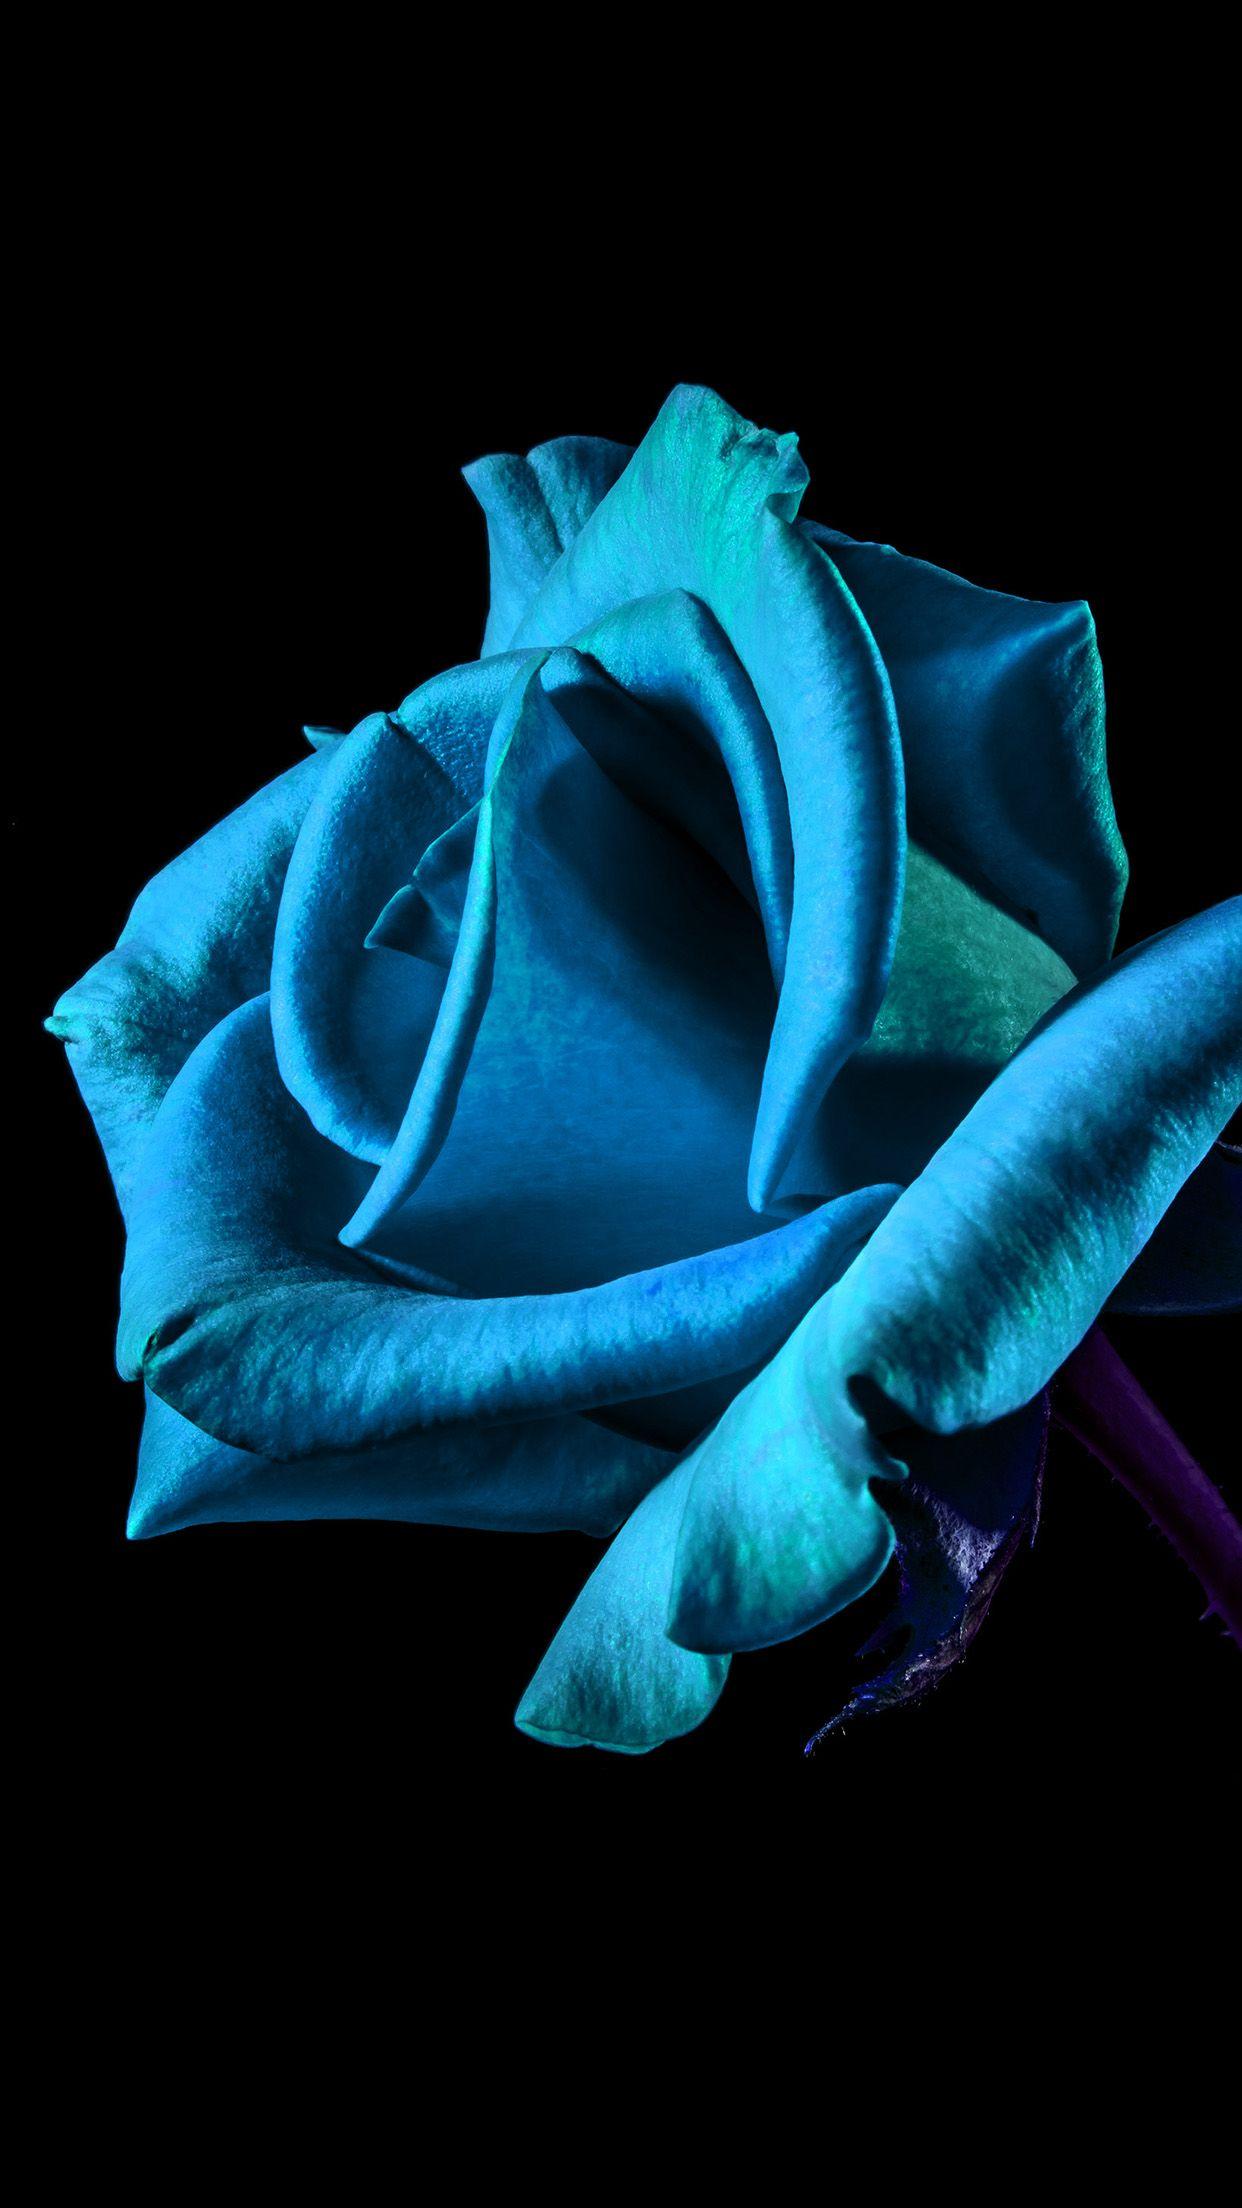 1242x2208 Hoa nền tối: Hoa hồng xanh Hình nền cho iPhone X, 8